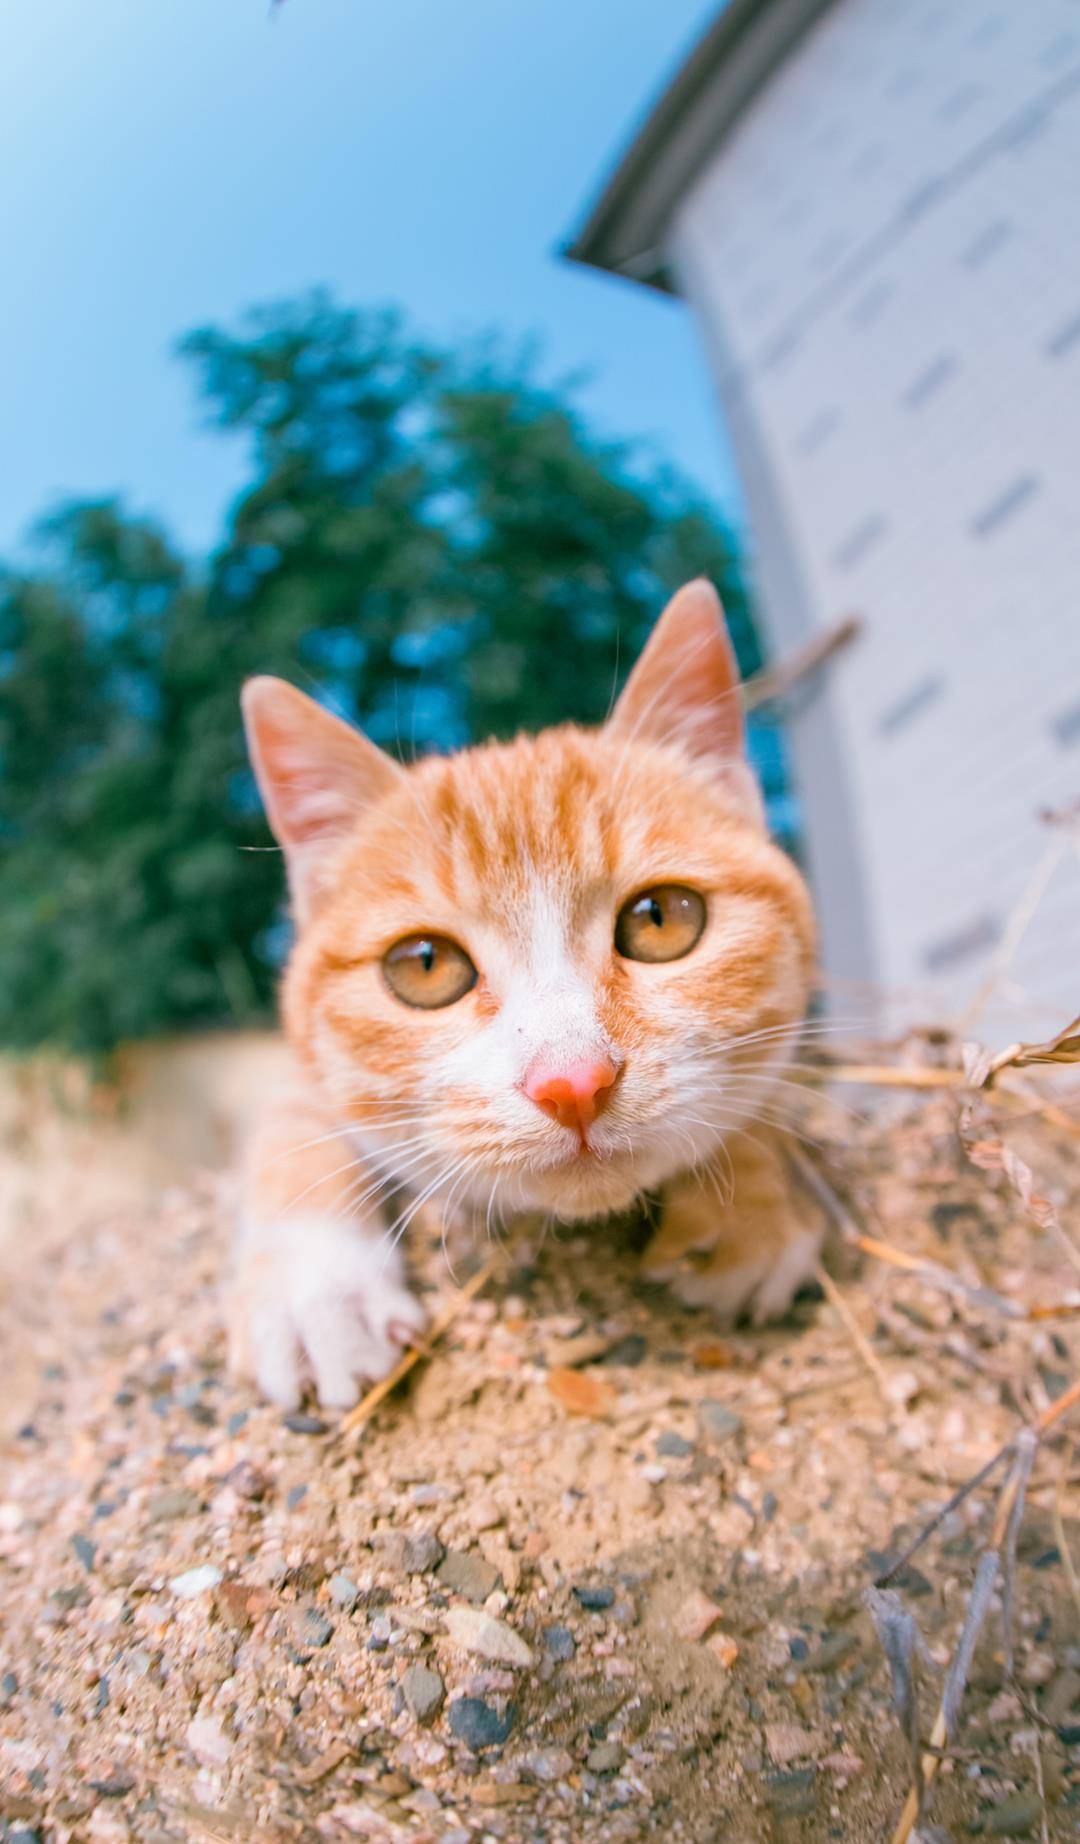 原创农村里的小橘猫长得好看又顽皮上树刨沙滚菜园无所不玩